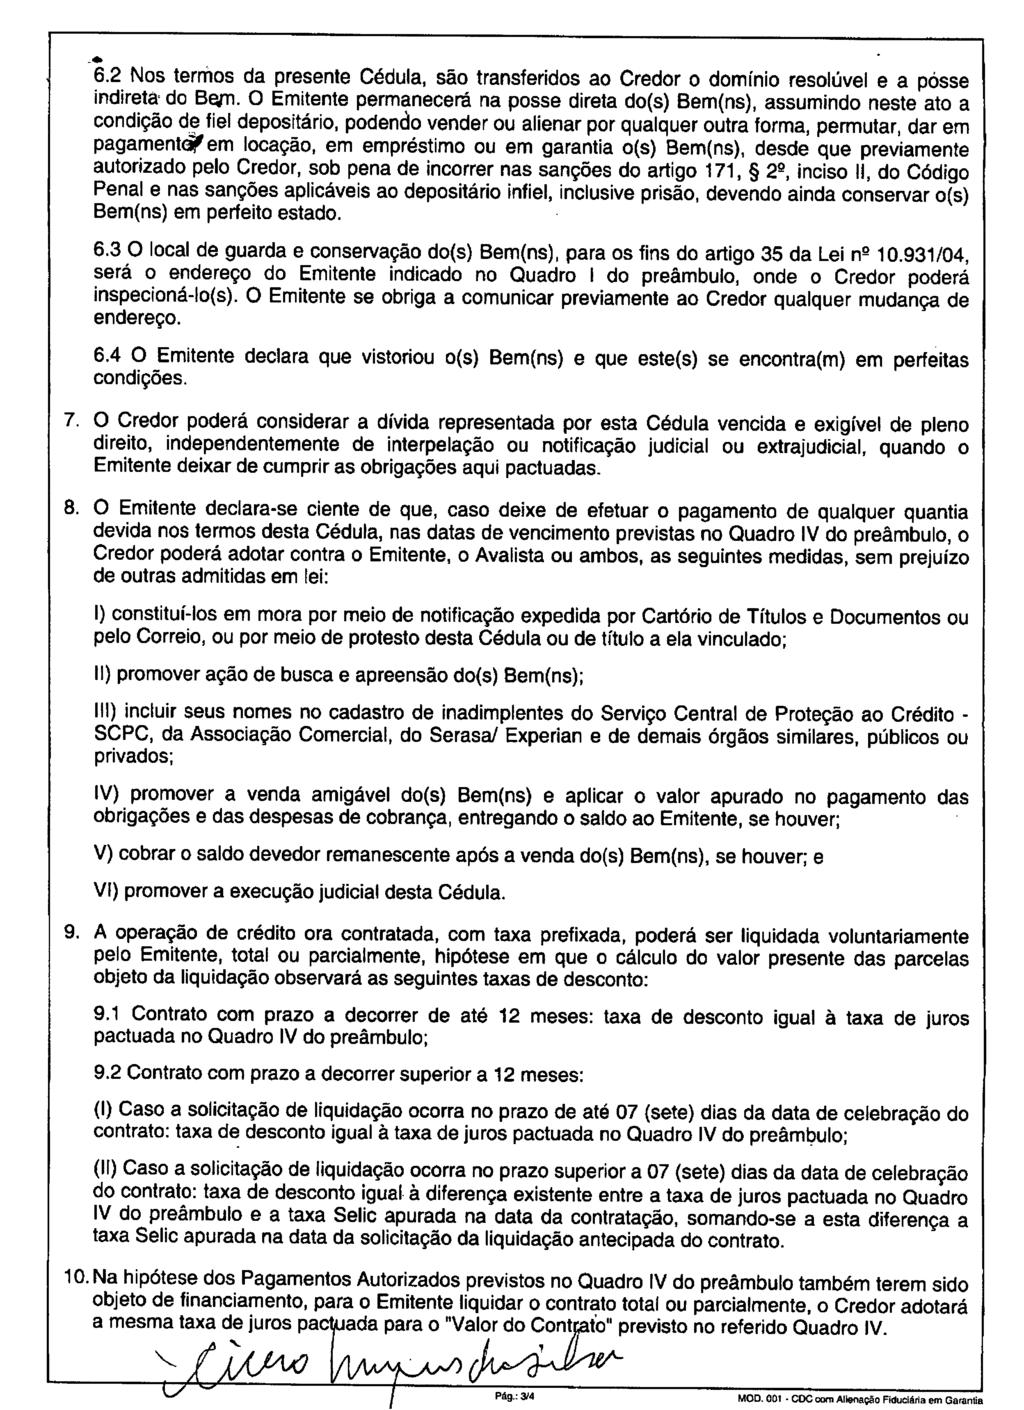 fls. 54 Este documento é cópia do original, assinado digitalmente por MARCOS ANTONIO AVILA, liberado nos autos em 10/05/2016 às 17:08.